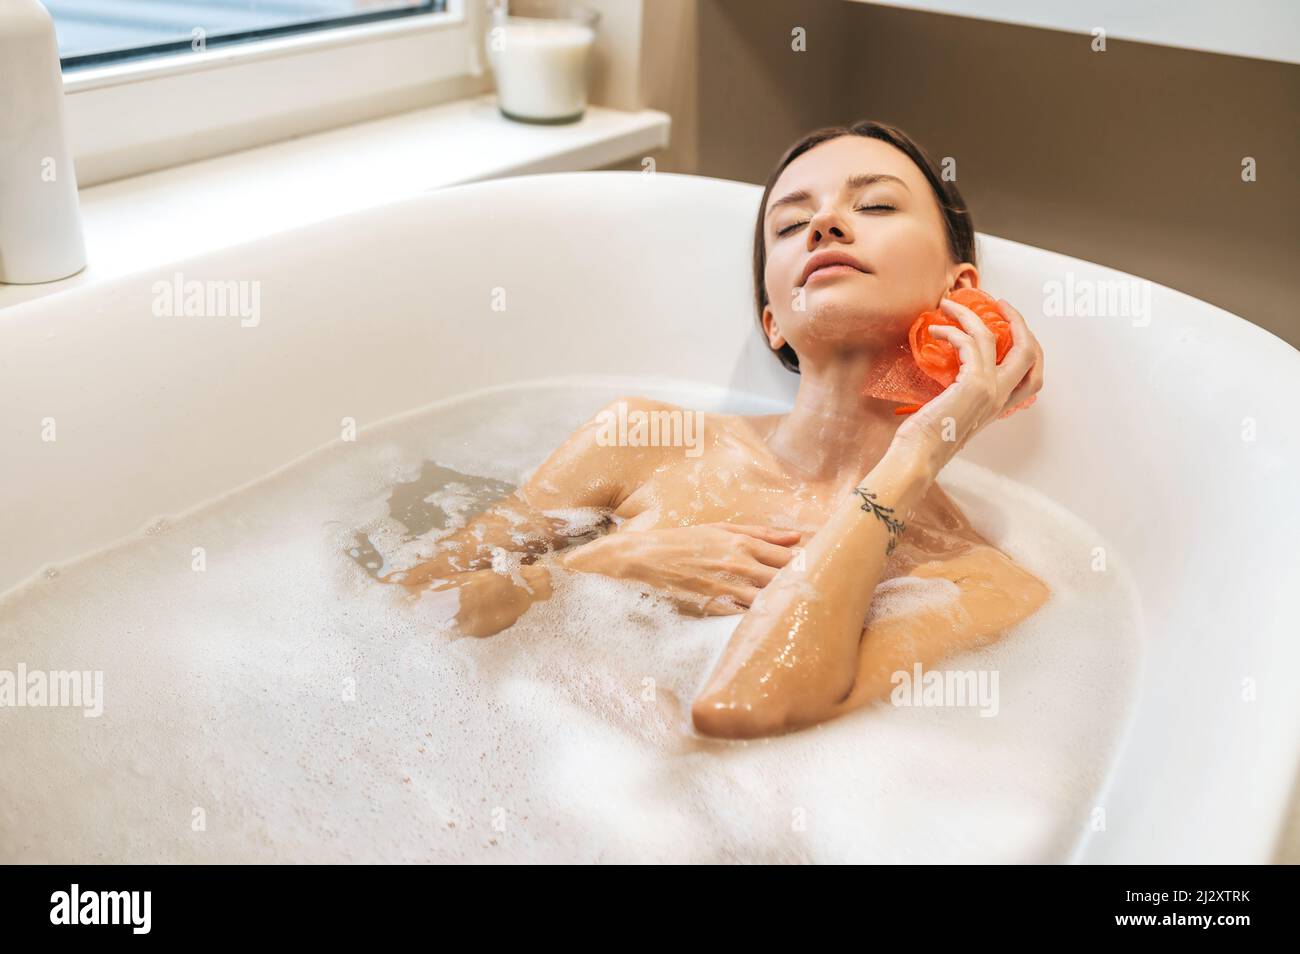 Une jeune femme paisible se baignant dans la baignoire Banque D'Images